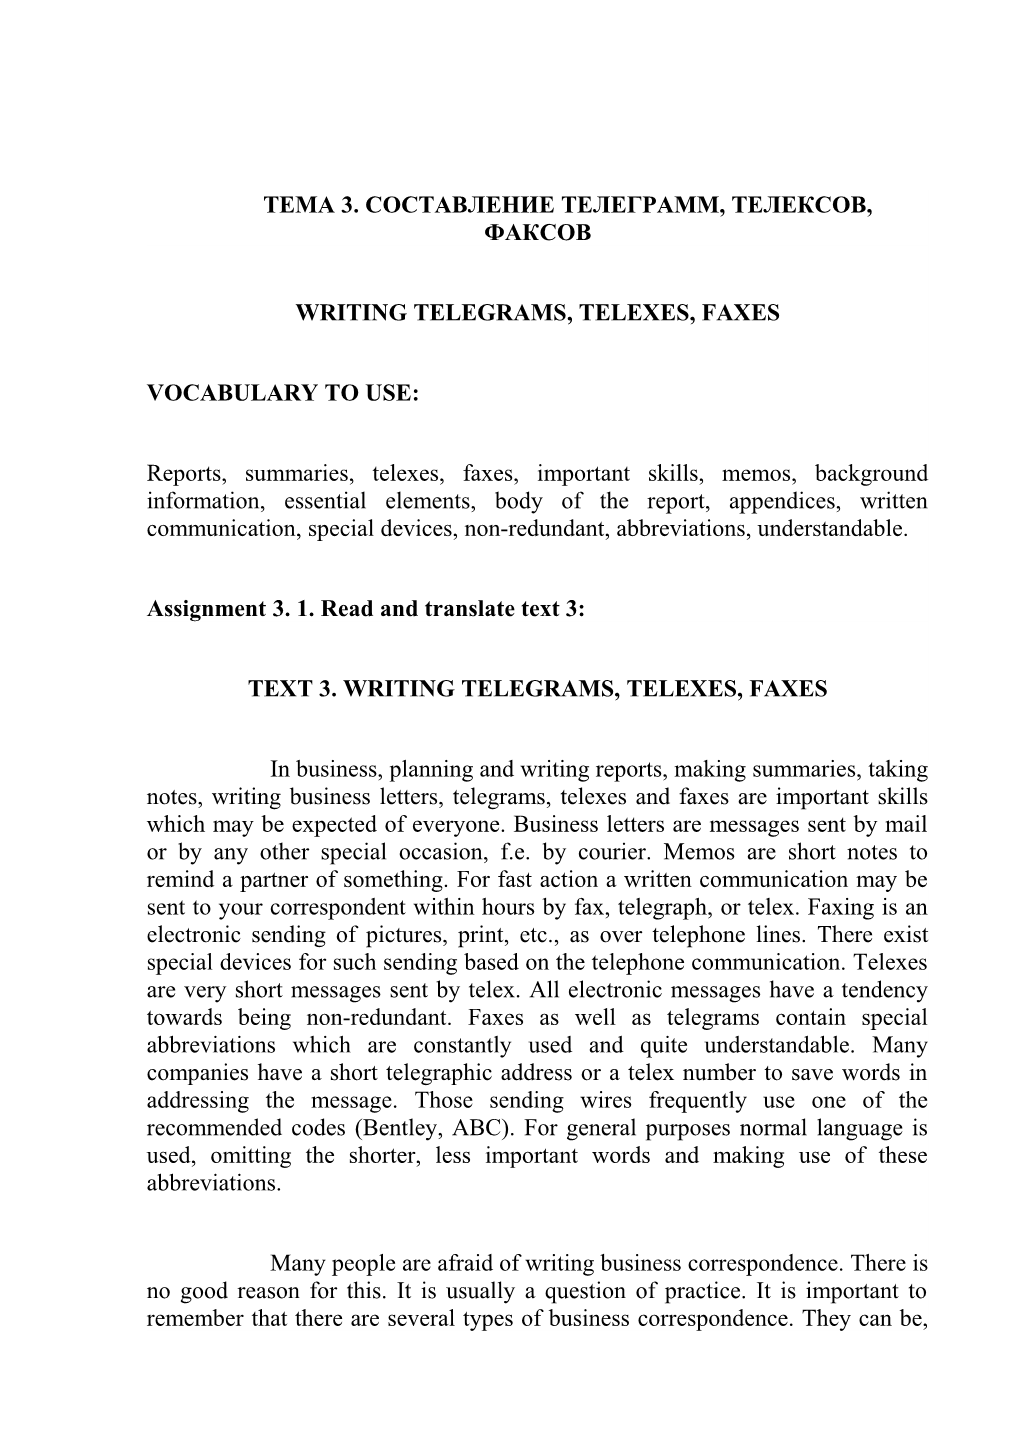 Writingtelegrams, Telexes, Faxes